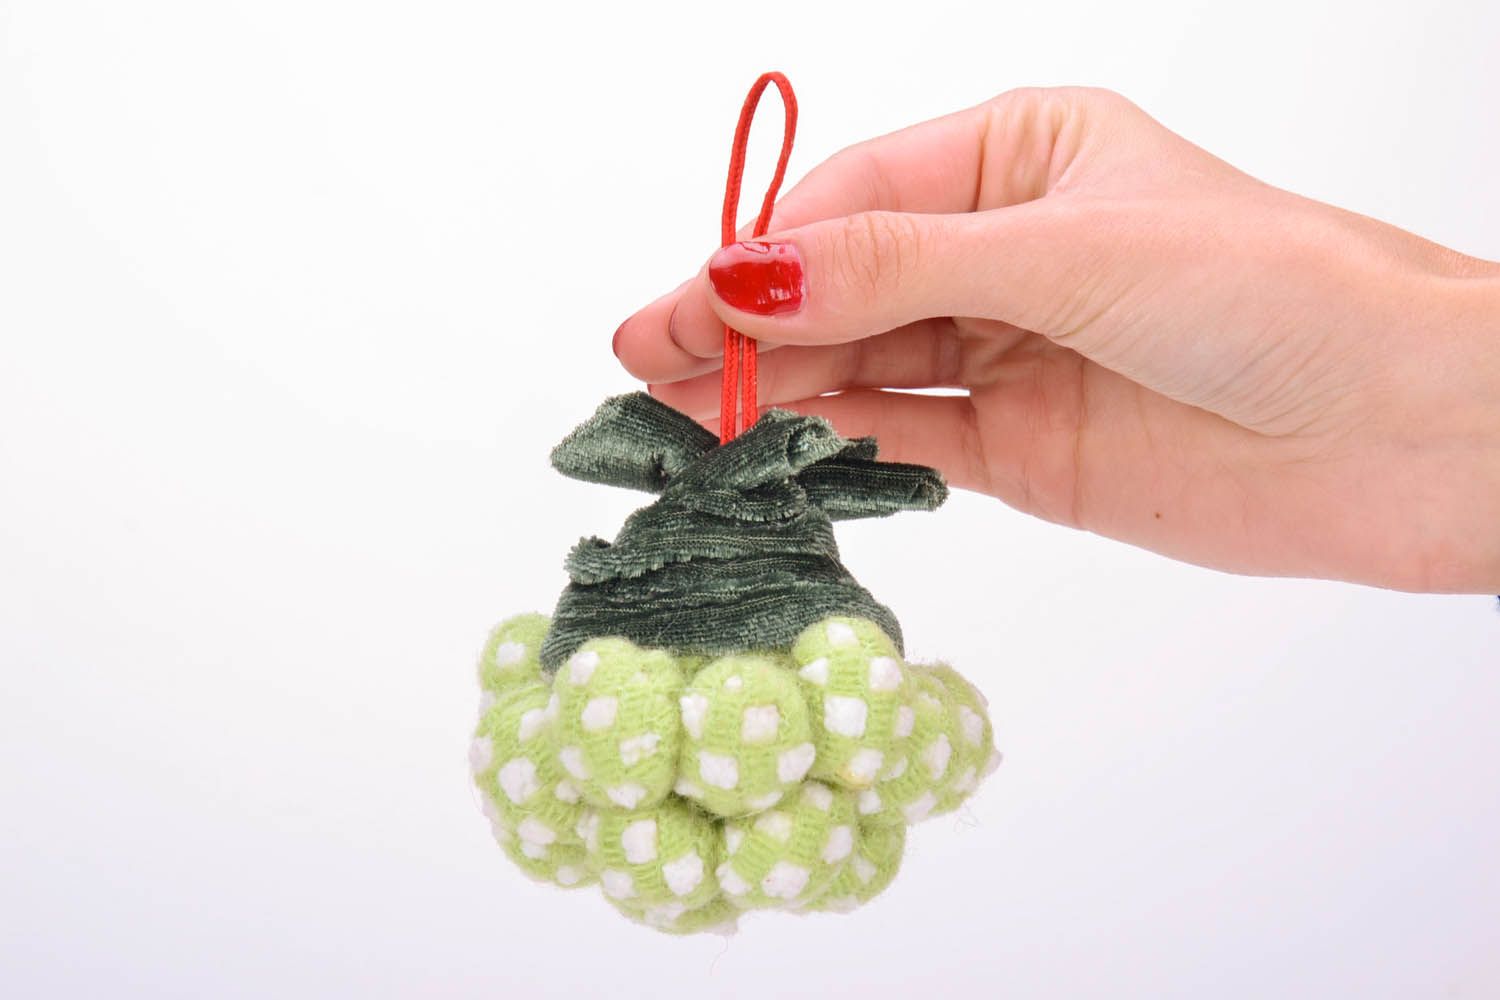 Brinquedo de Natal artesanal feito de plástico decorado com borracha esponjosa foto 5